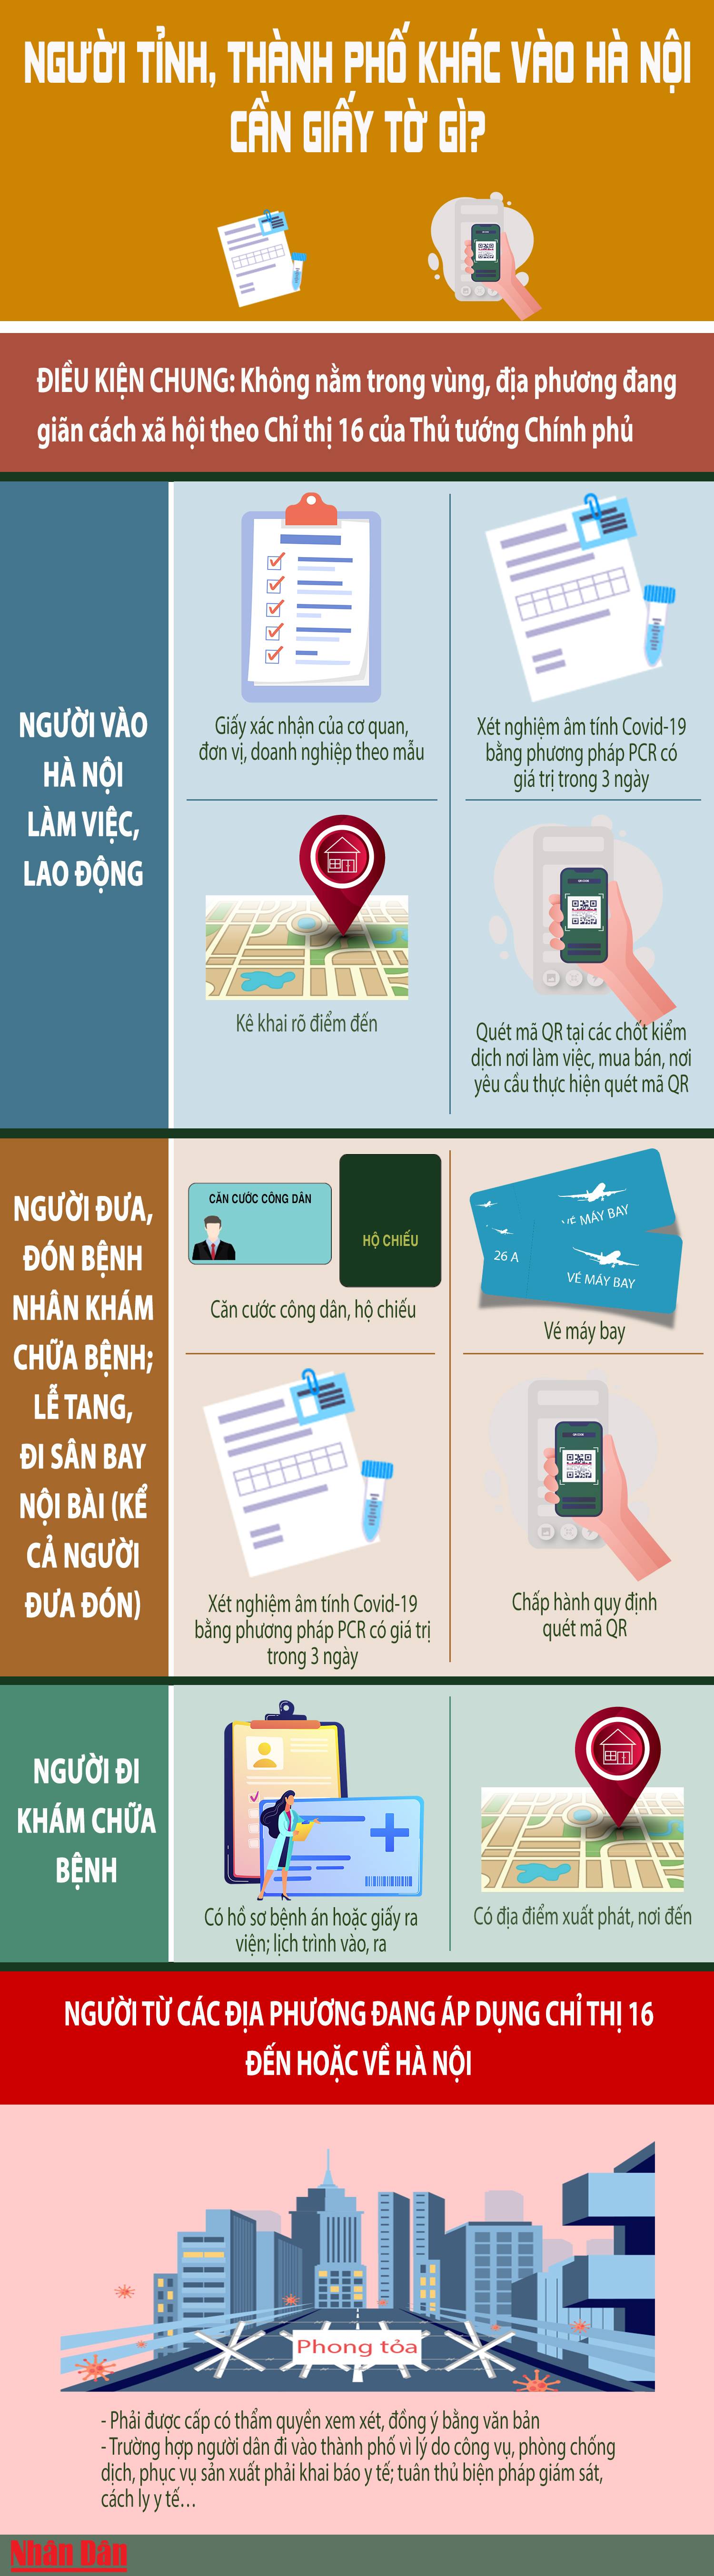 [Infographics] Người tỉnh, thành phố khác ra, vào Hà Nội cần những giấy tờ gì? - Ảnh 1